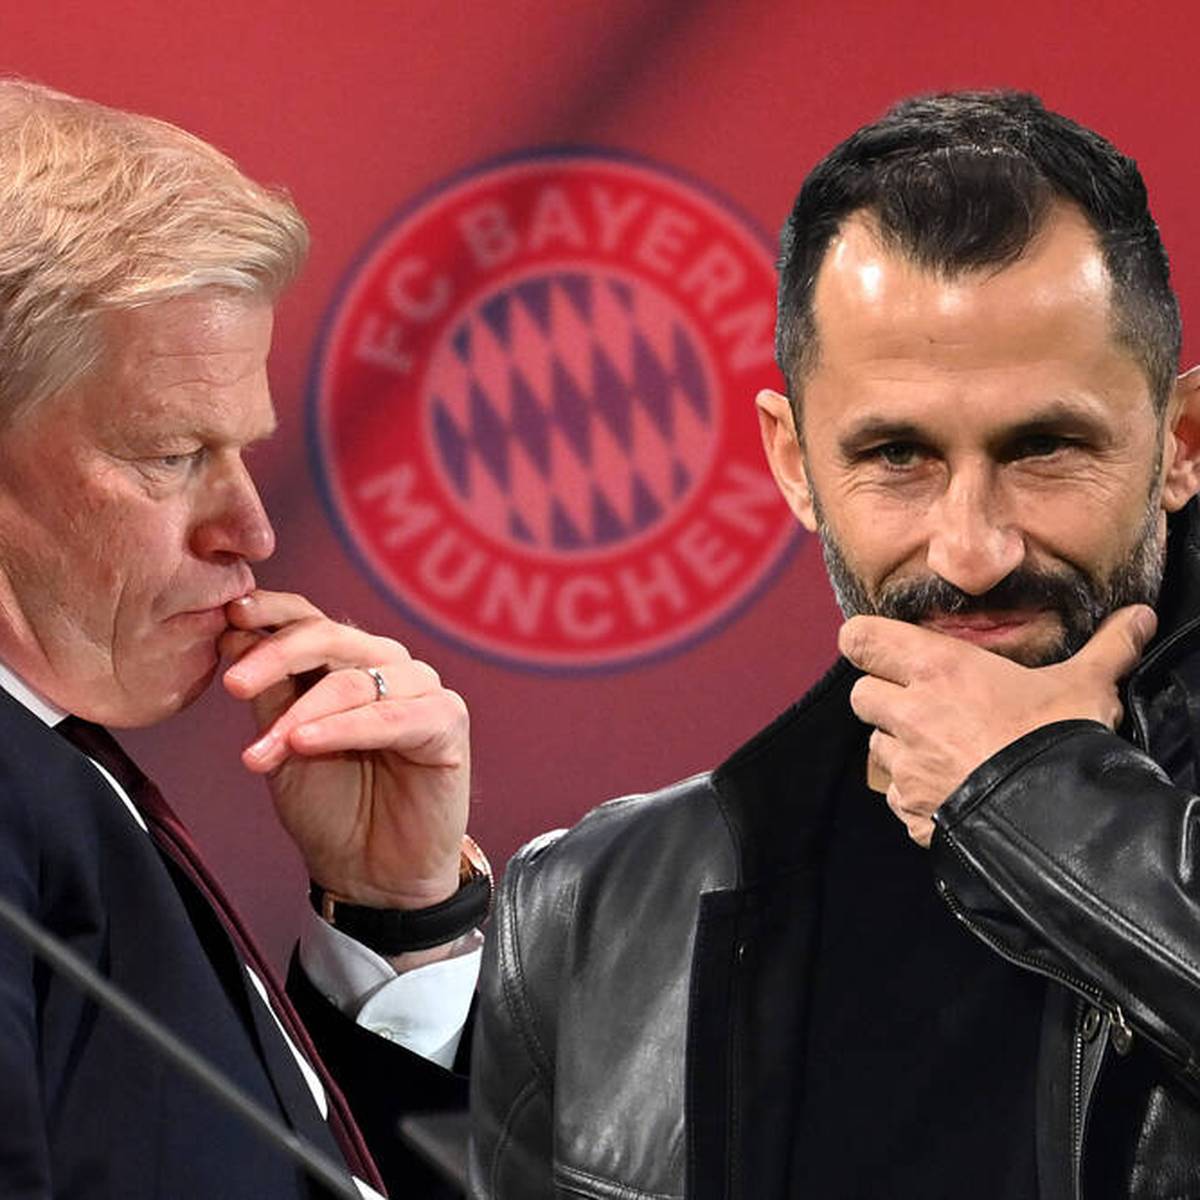 Die Zukunft von Robert Lewandowski beim FC Bayern ist ungewiss. Der Stürmer möchte den Rekordmeister am liebsten sofort verlassen, die Bayern beharren aber auf den bis 2023 gültigen Vertrag. Ihre Meinung ist gefragt - mit wem sollen die Münchner nächste Saison angreifen?